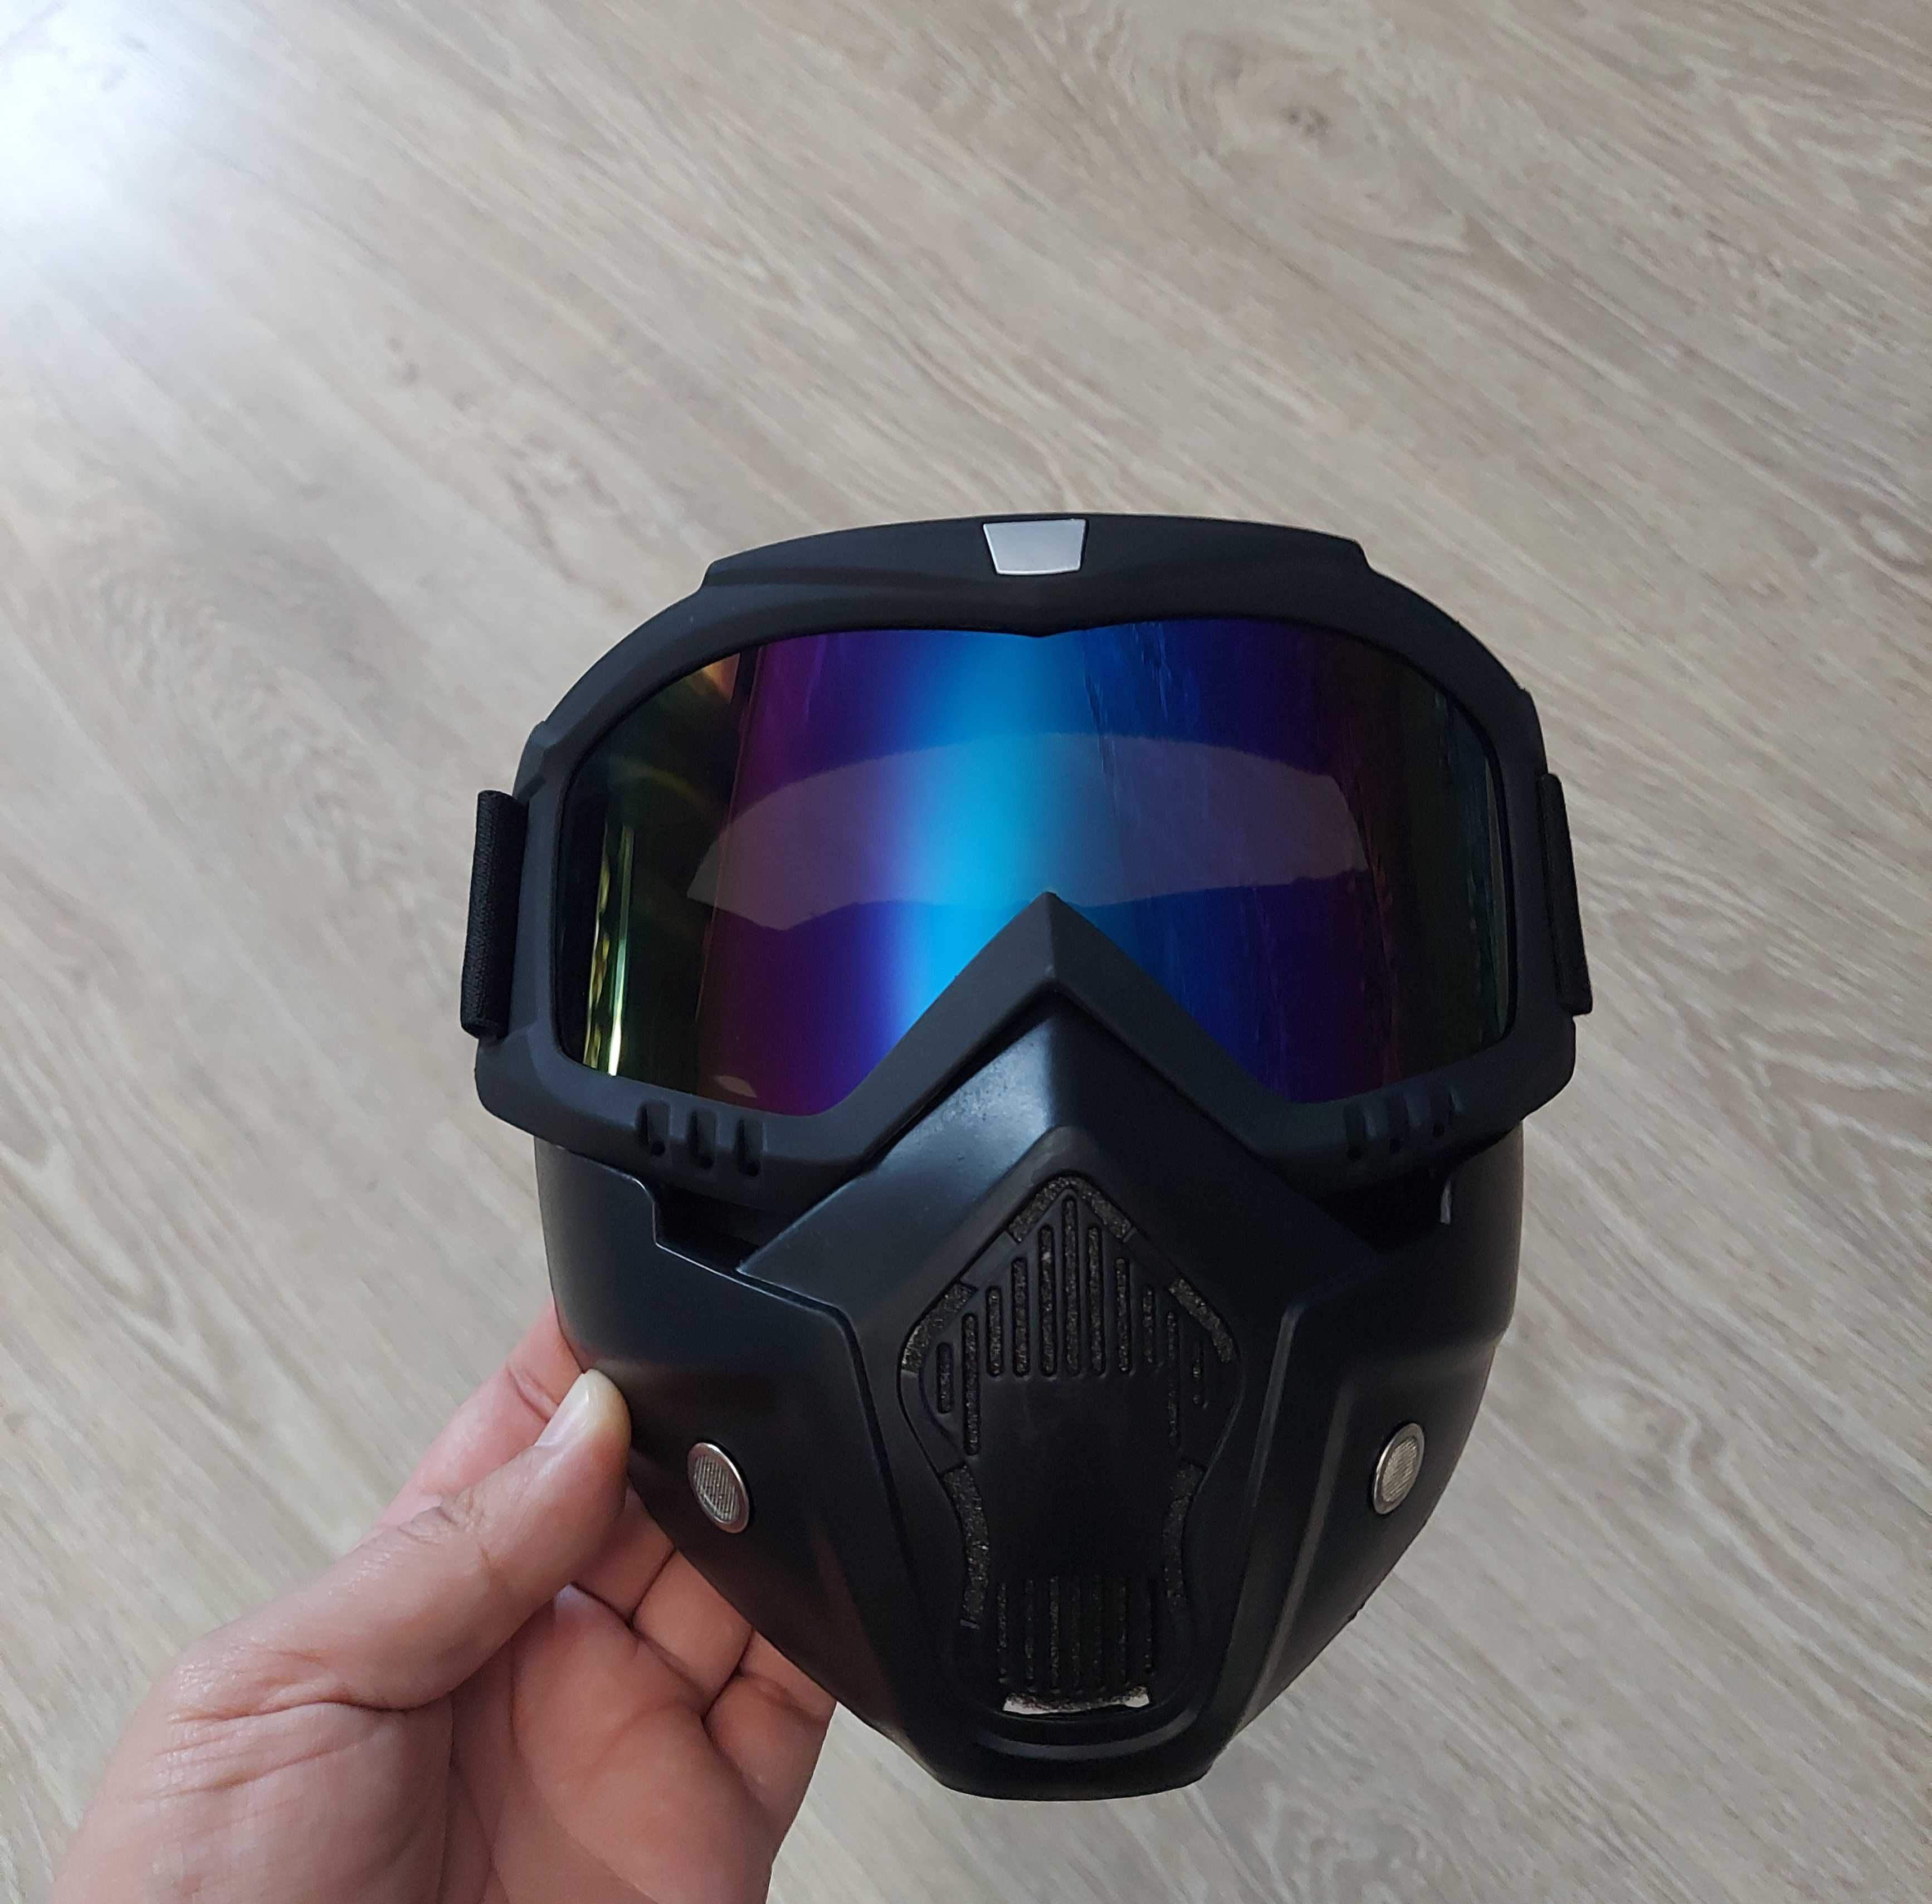 Захисна маска окуляри пейнтбол страйкбол лижі сноуборд мото очки вело